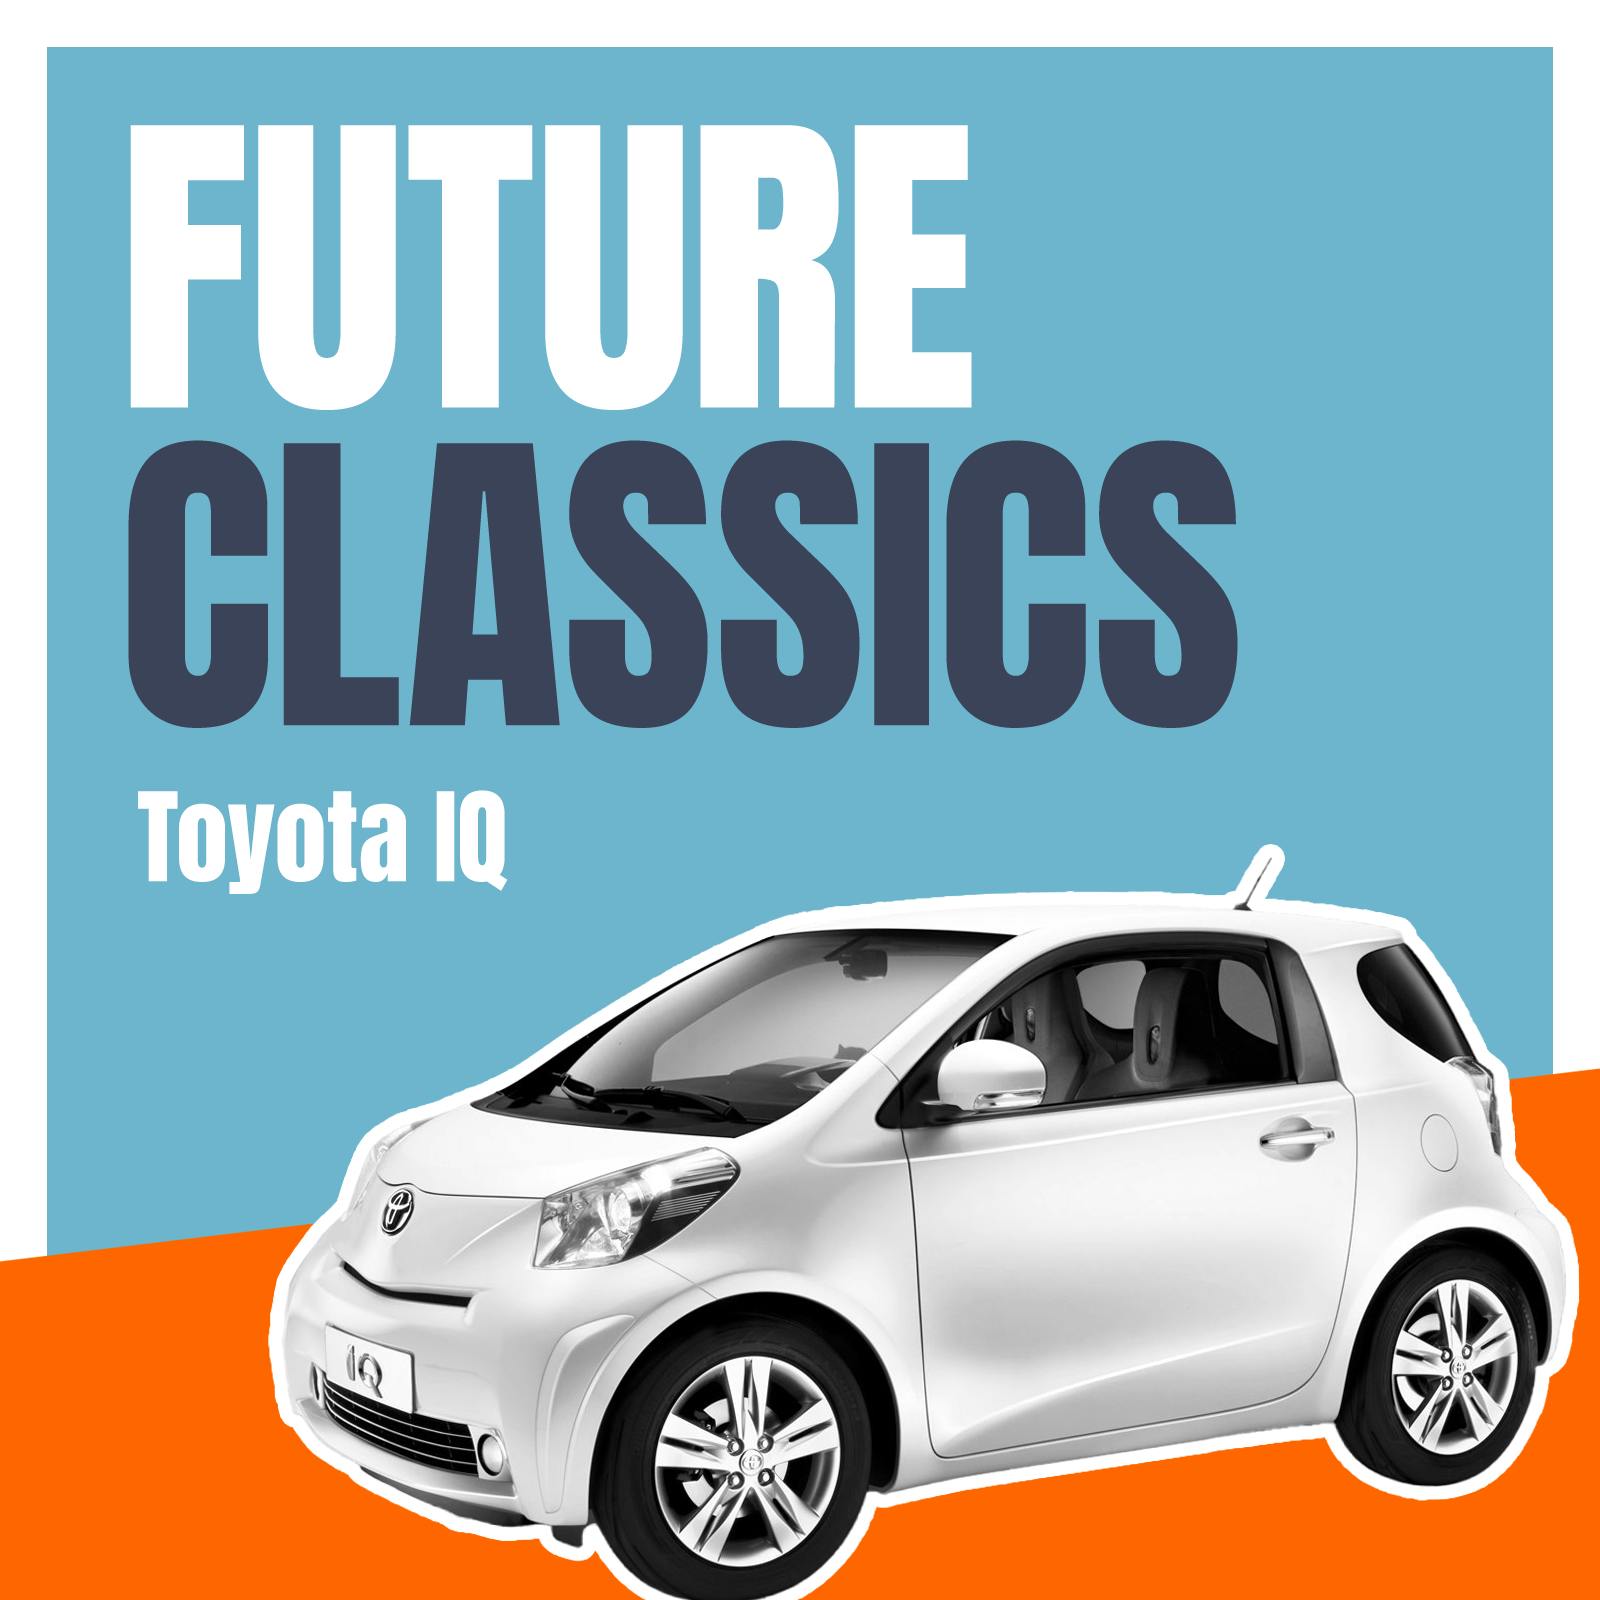 Toyota IQ – Folge 22